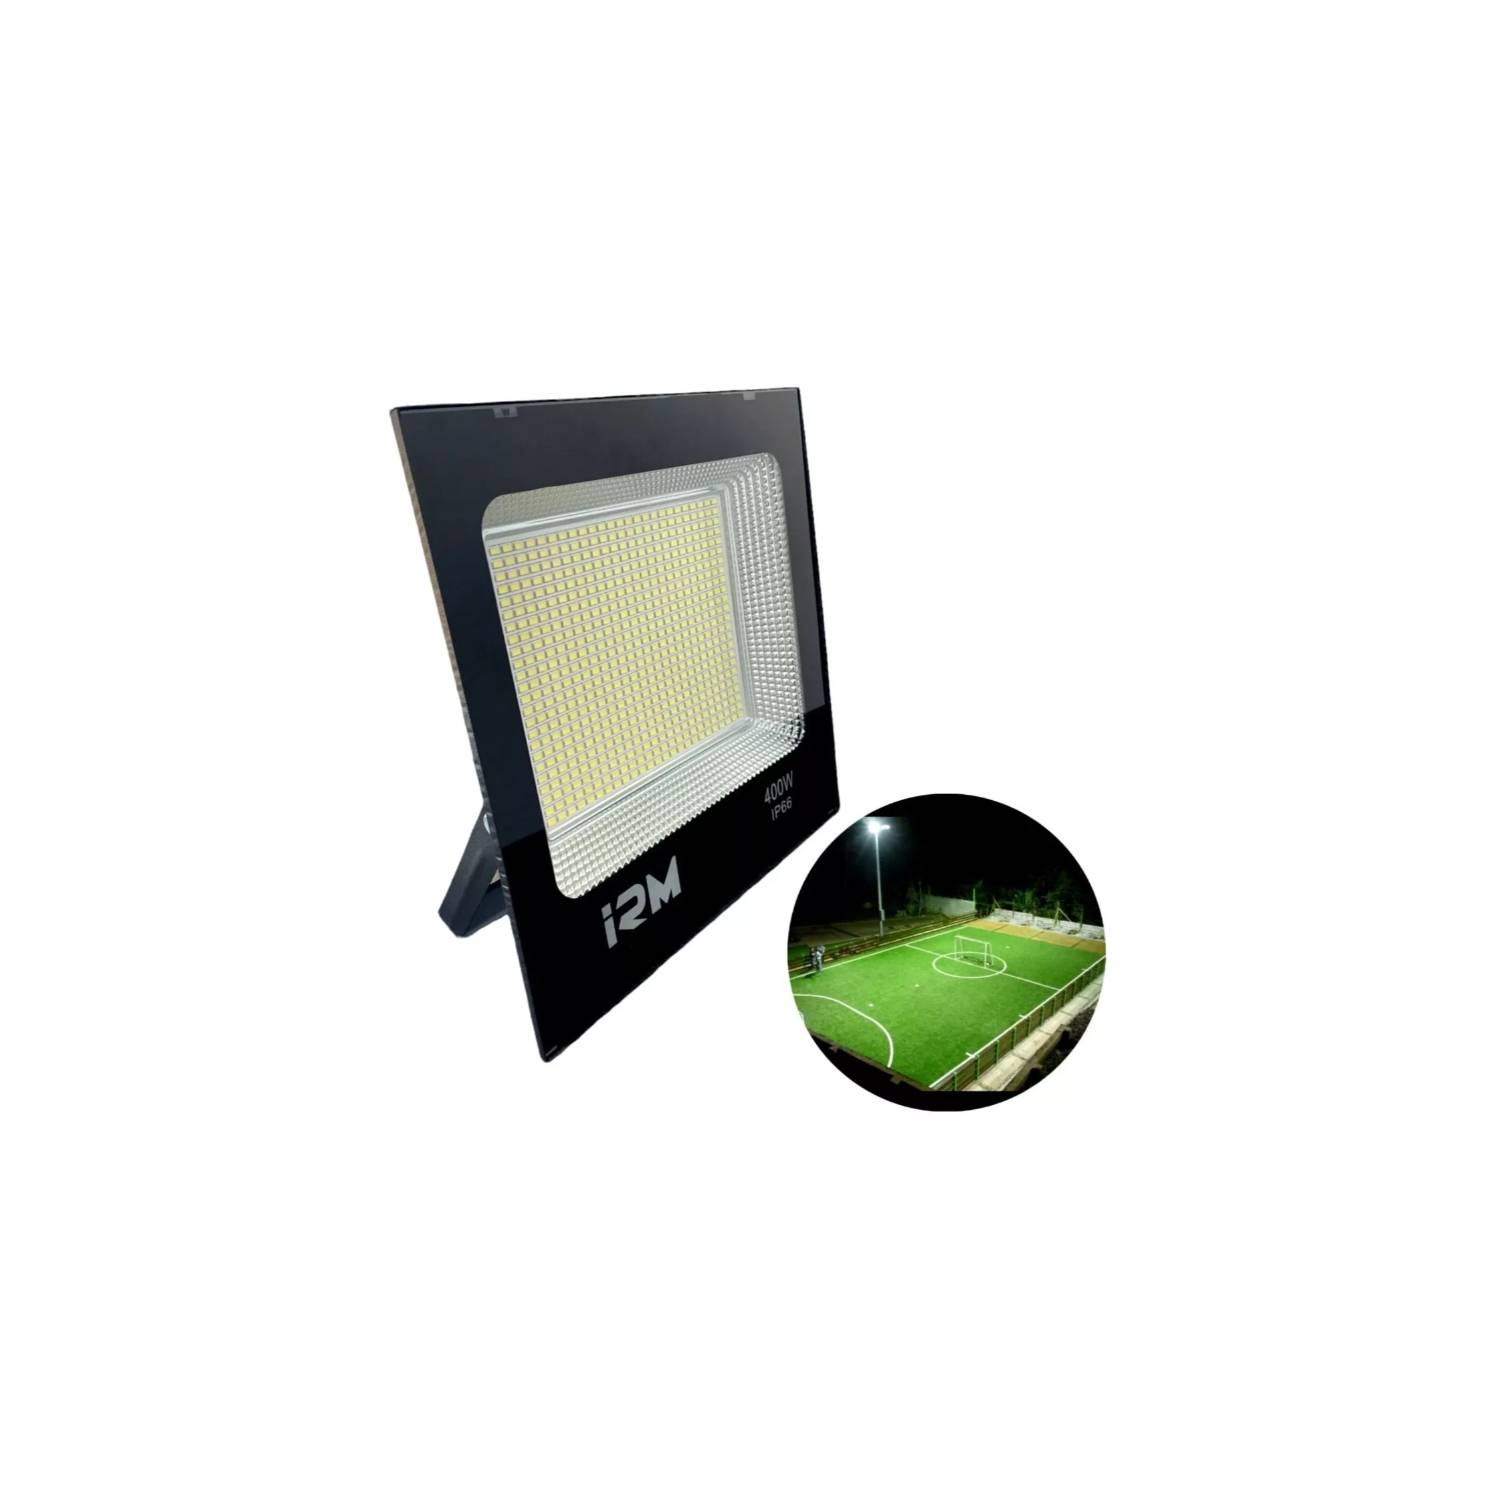 GENERICO FocoS 400w Reflector Luz Led Exterior Ip66 Montable Canchas